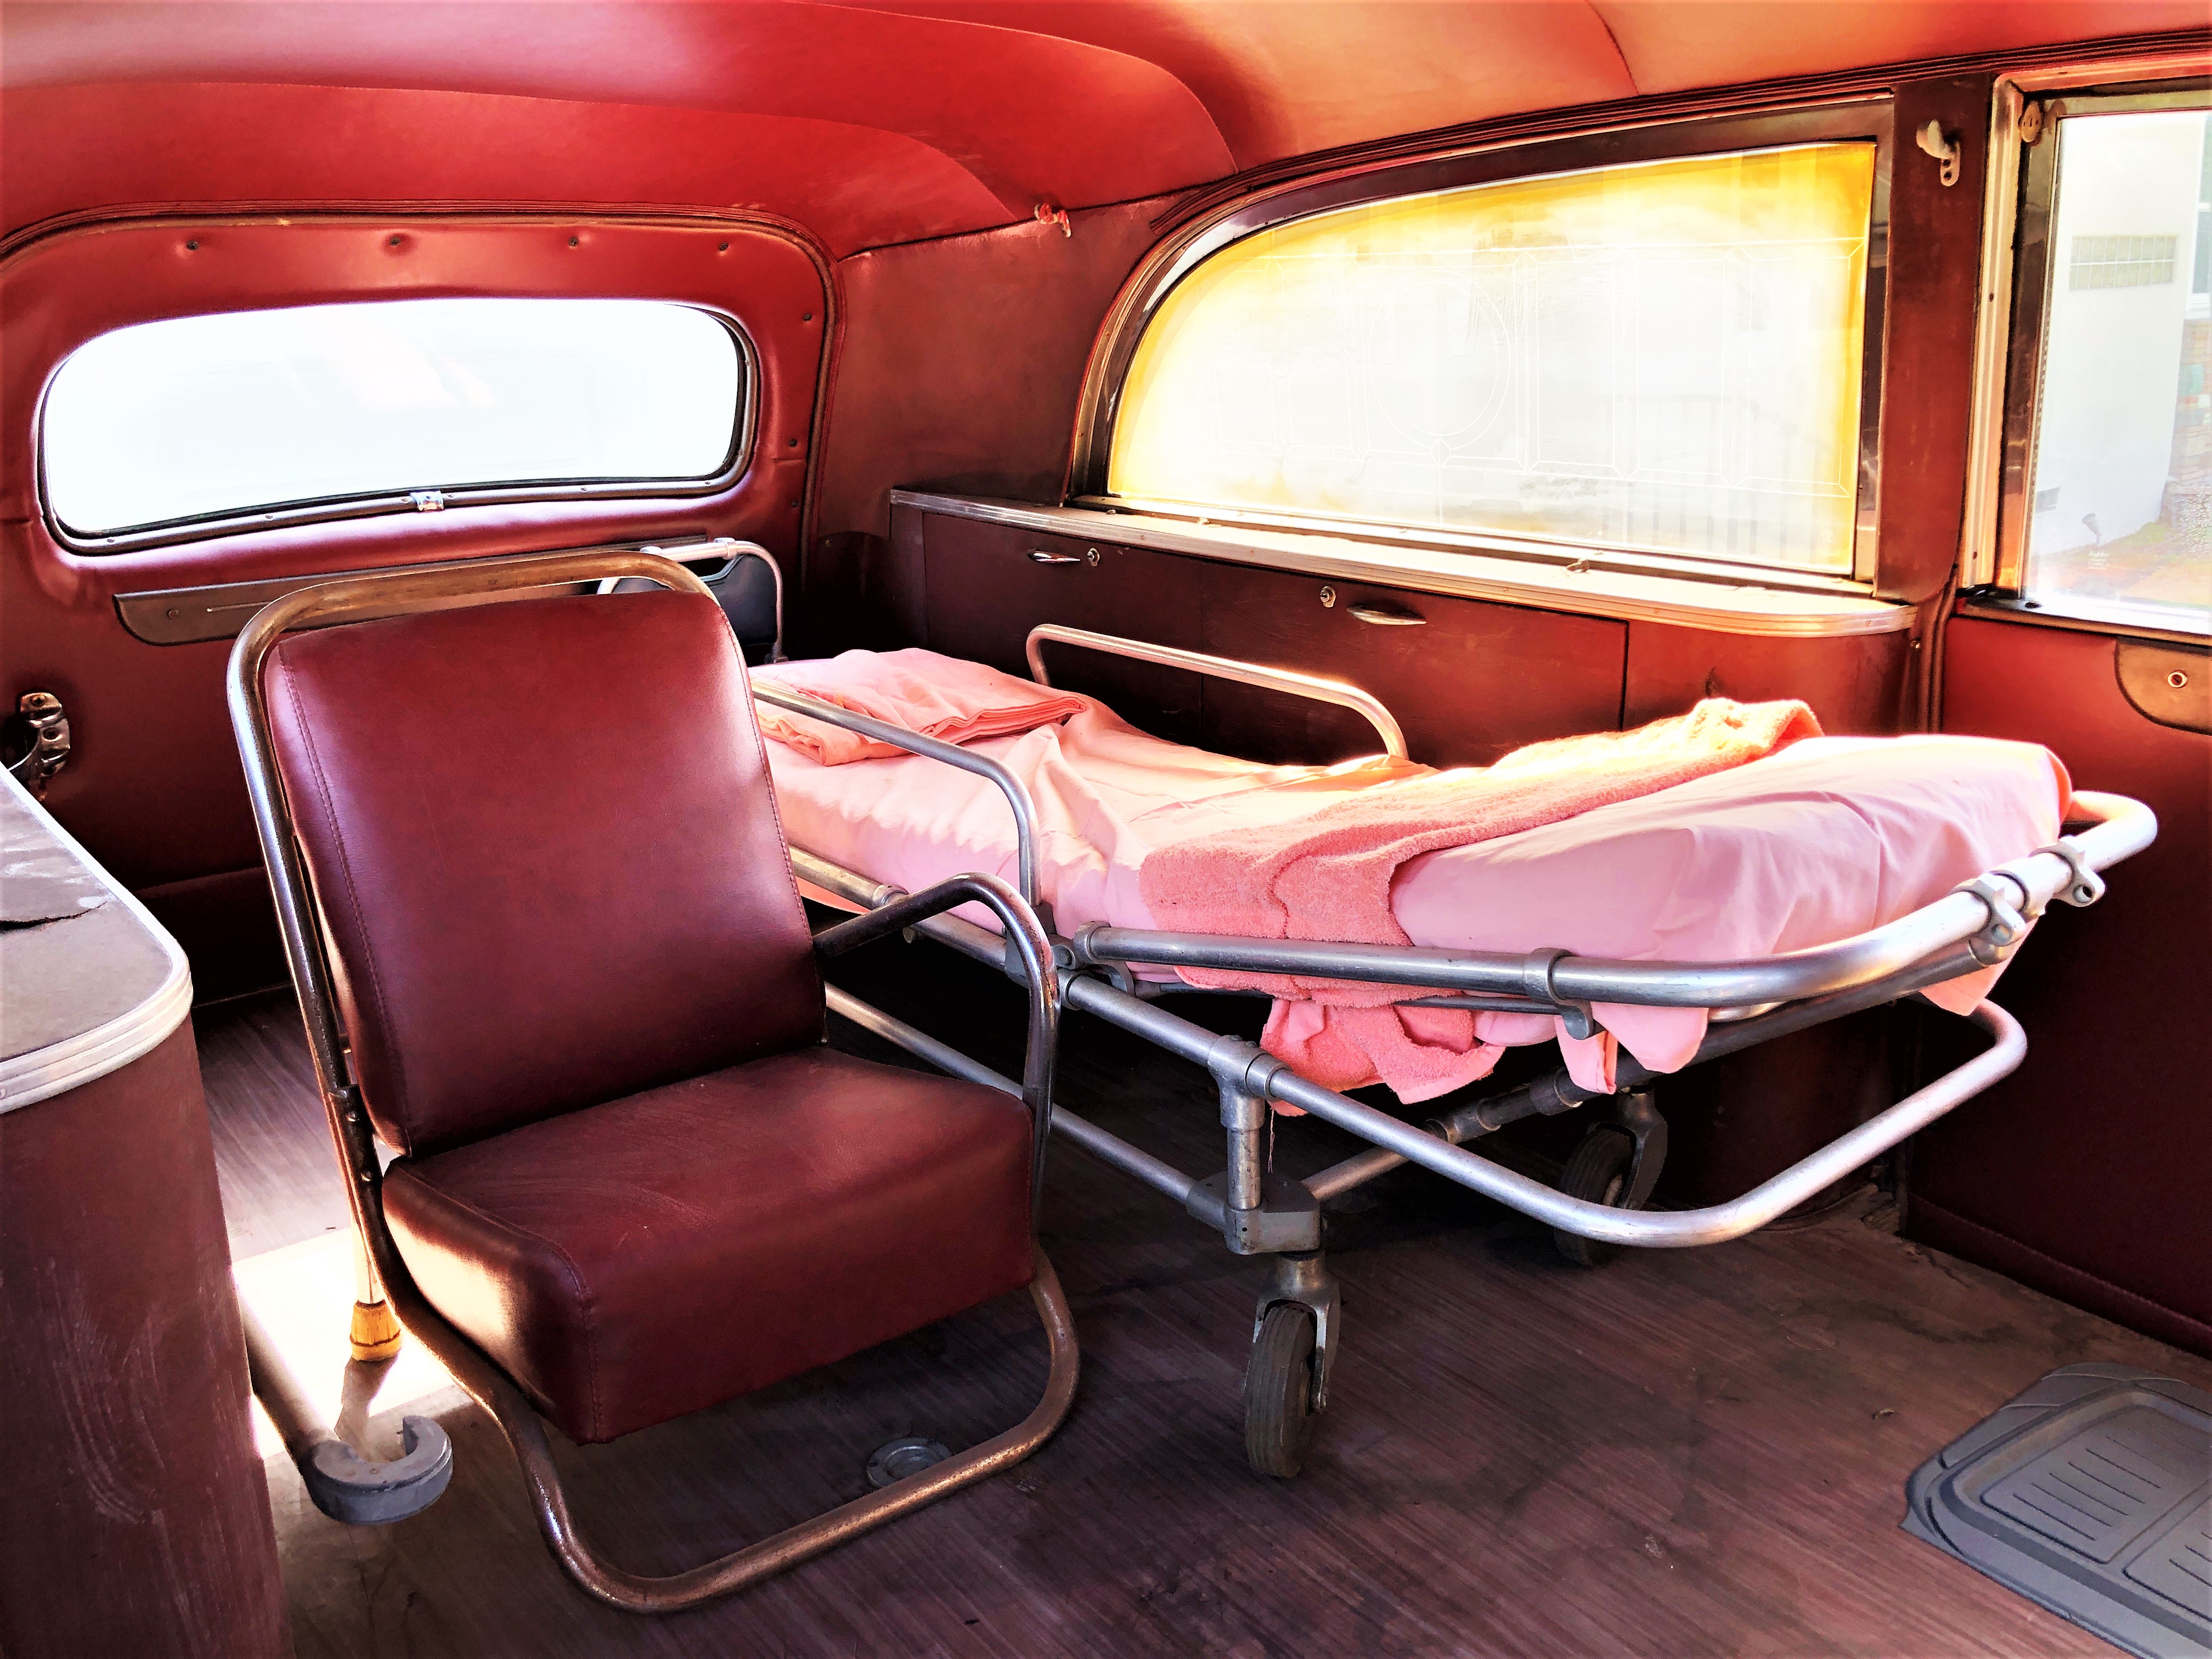 1947 Cadillac Ambulance - Vintage Emergency Vehicles